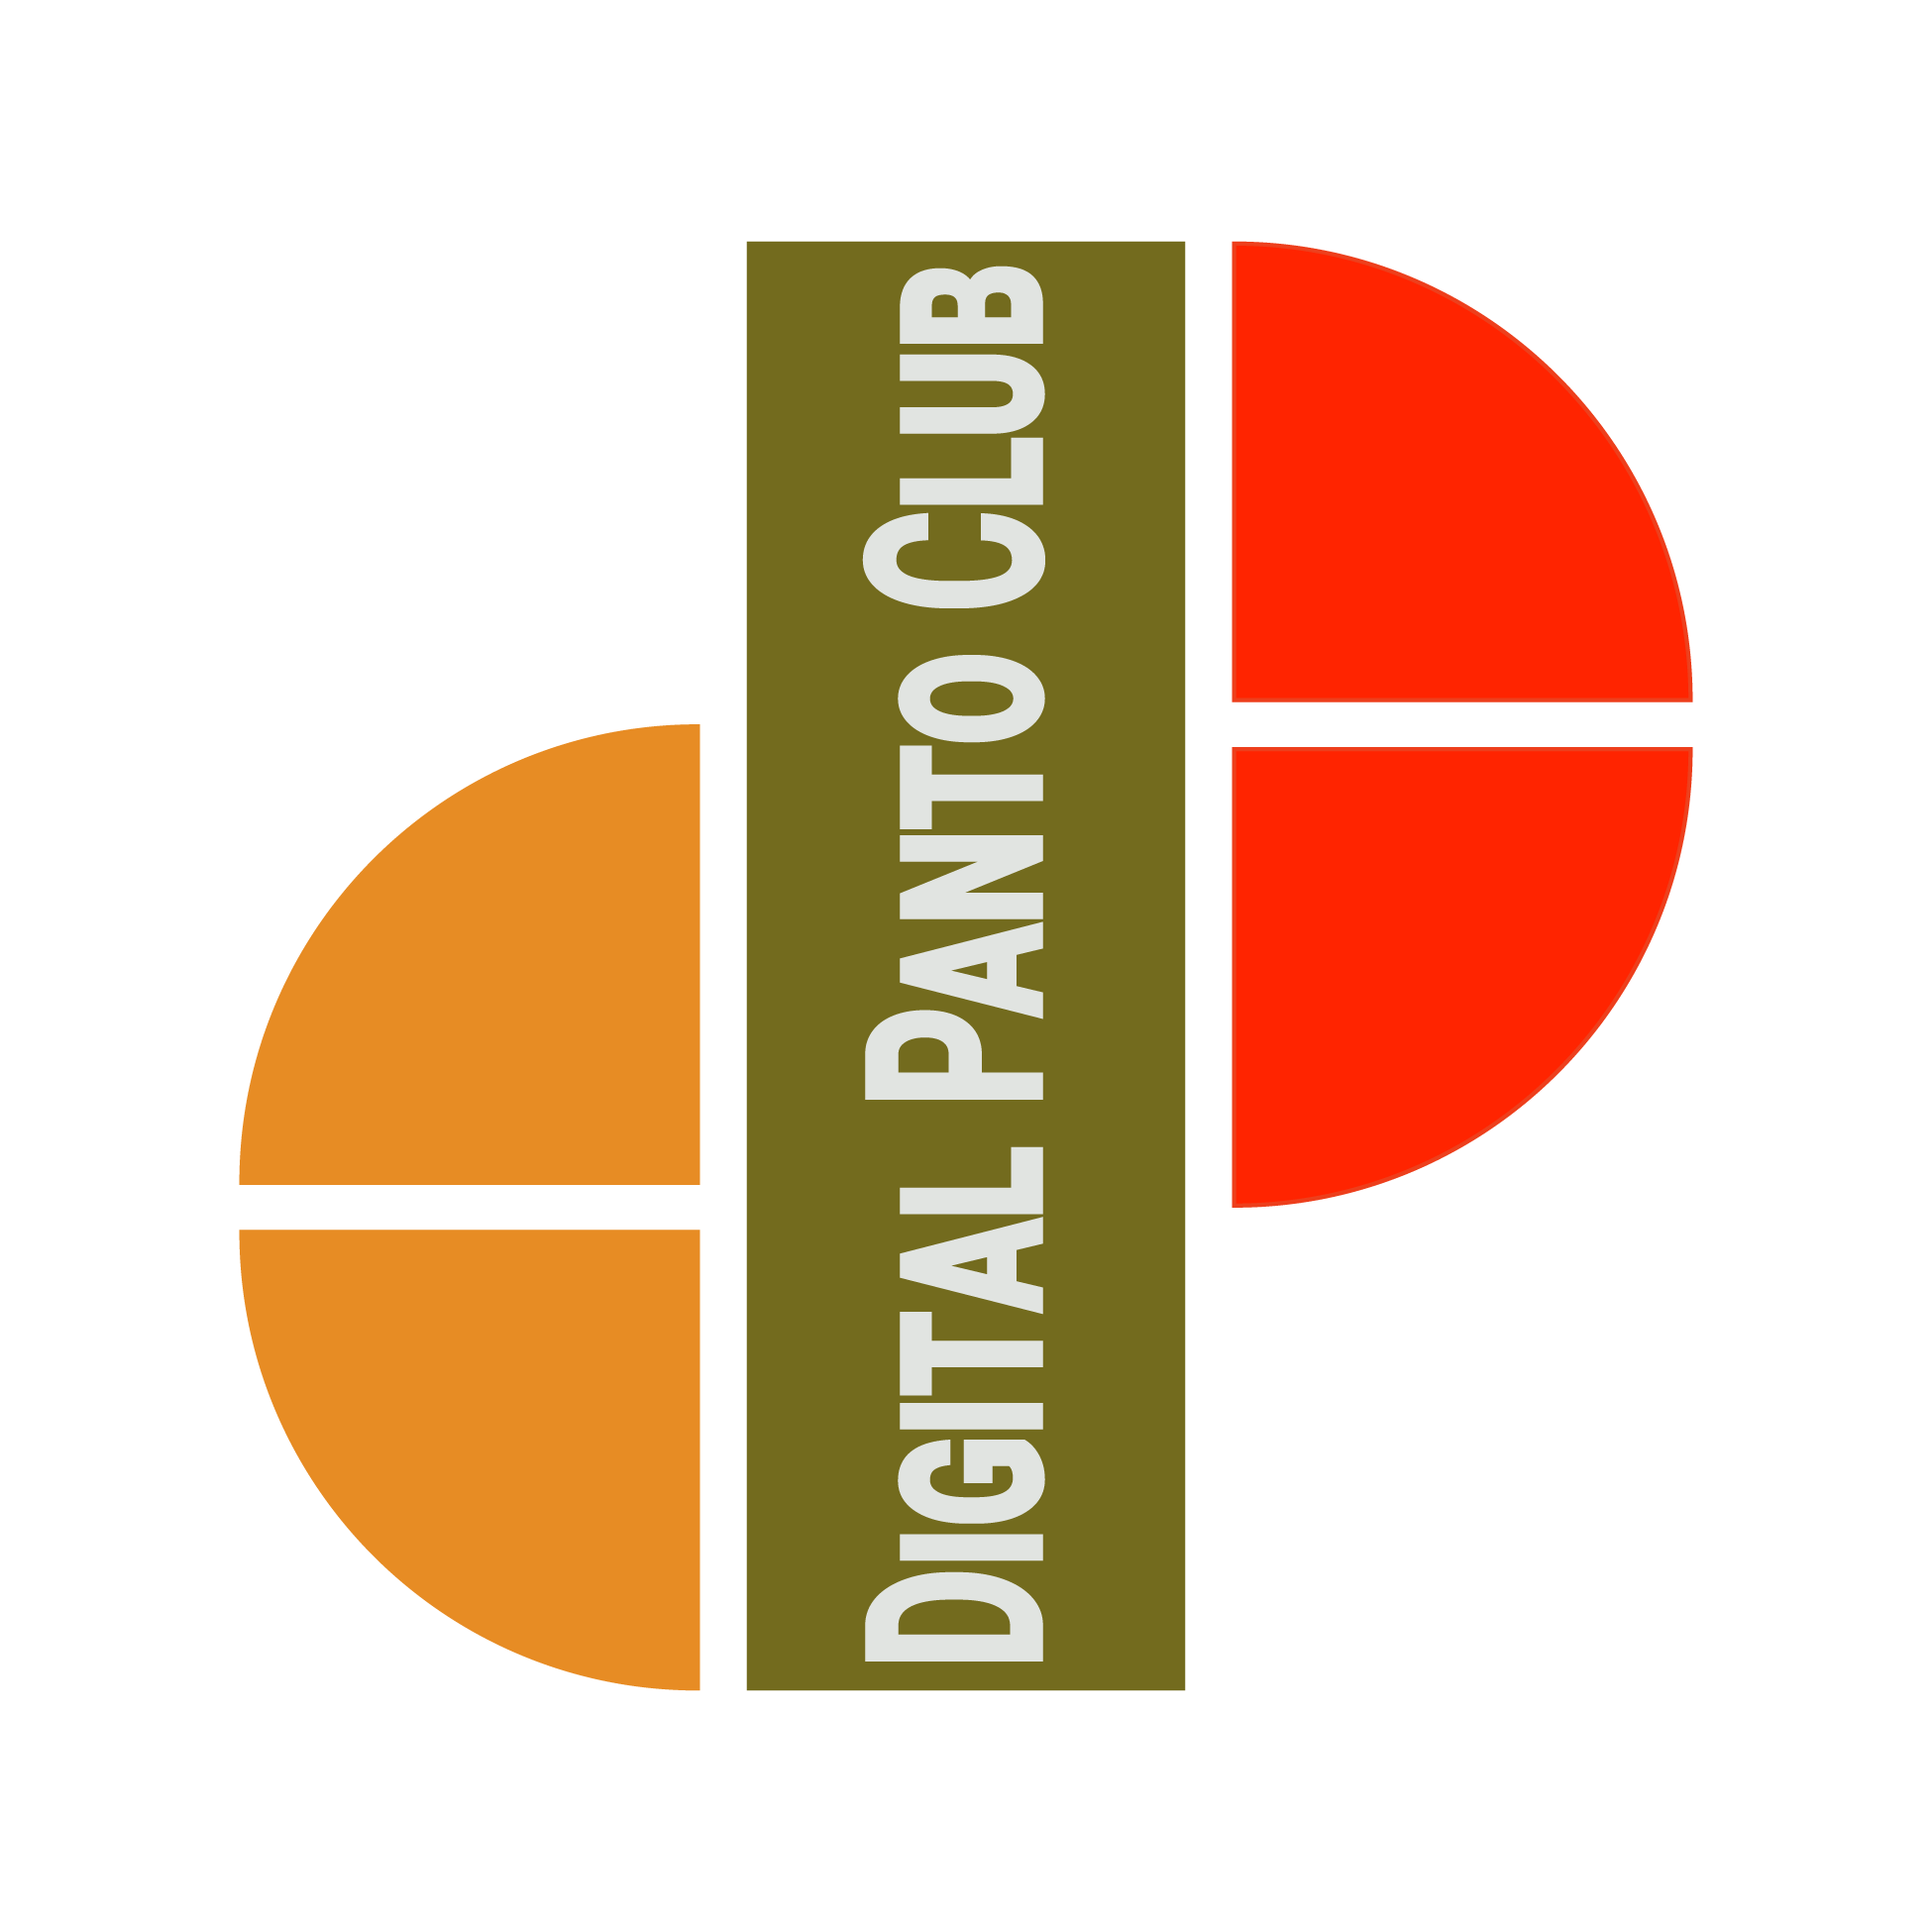 Digital Panto Club